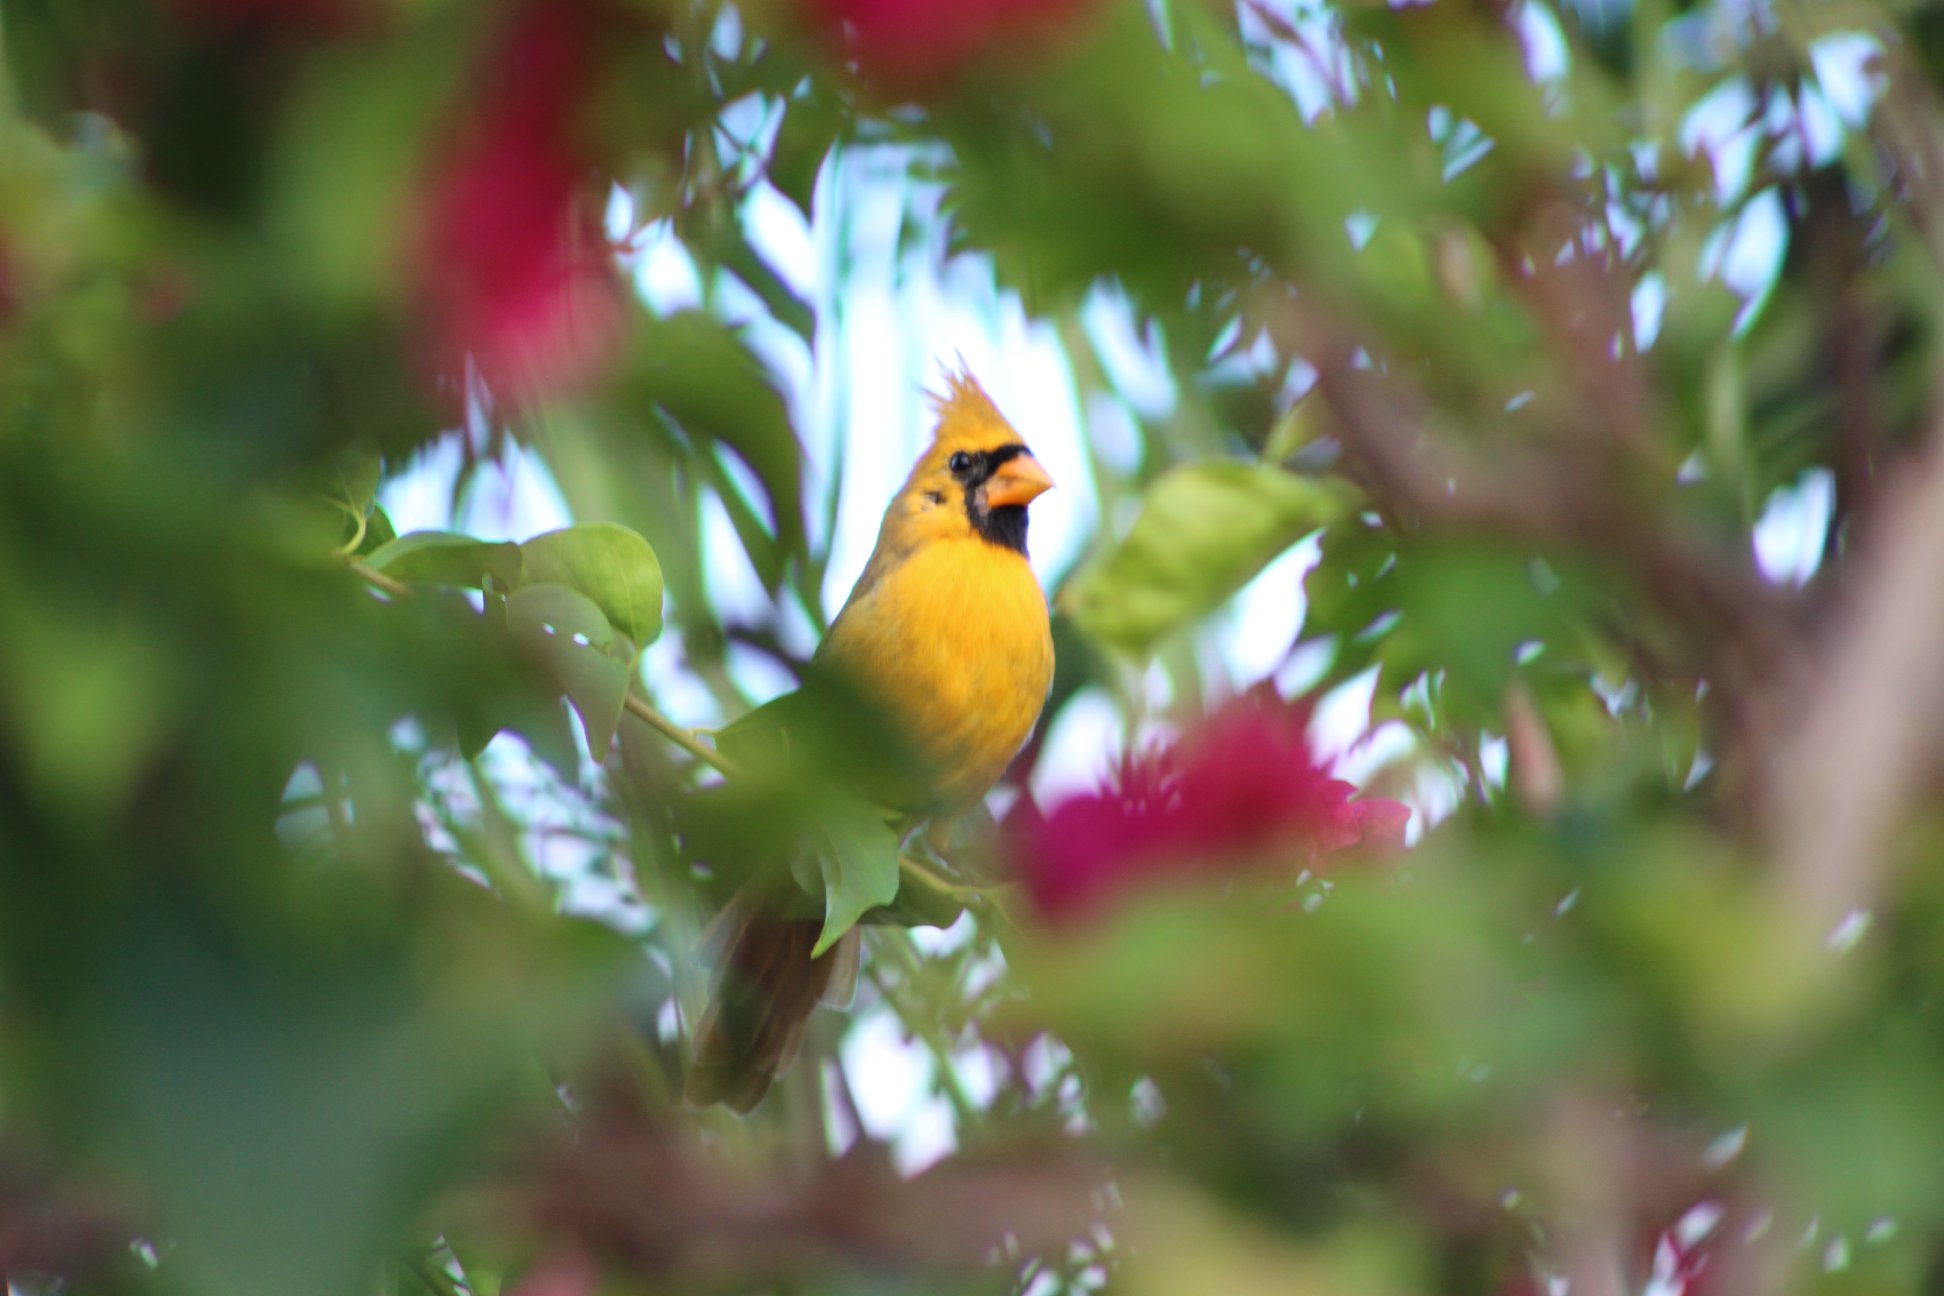 Photograph of the rare Yellow Cardinal